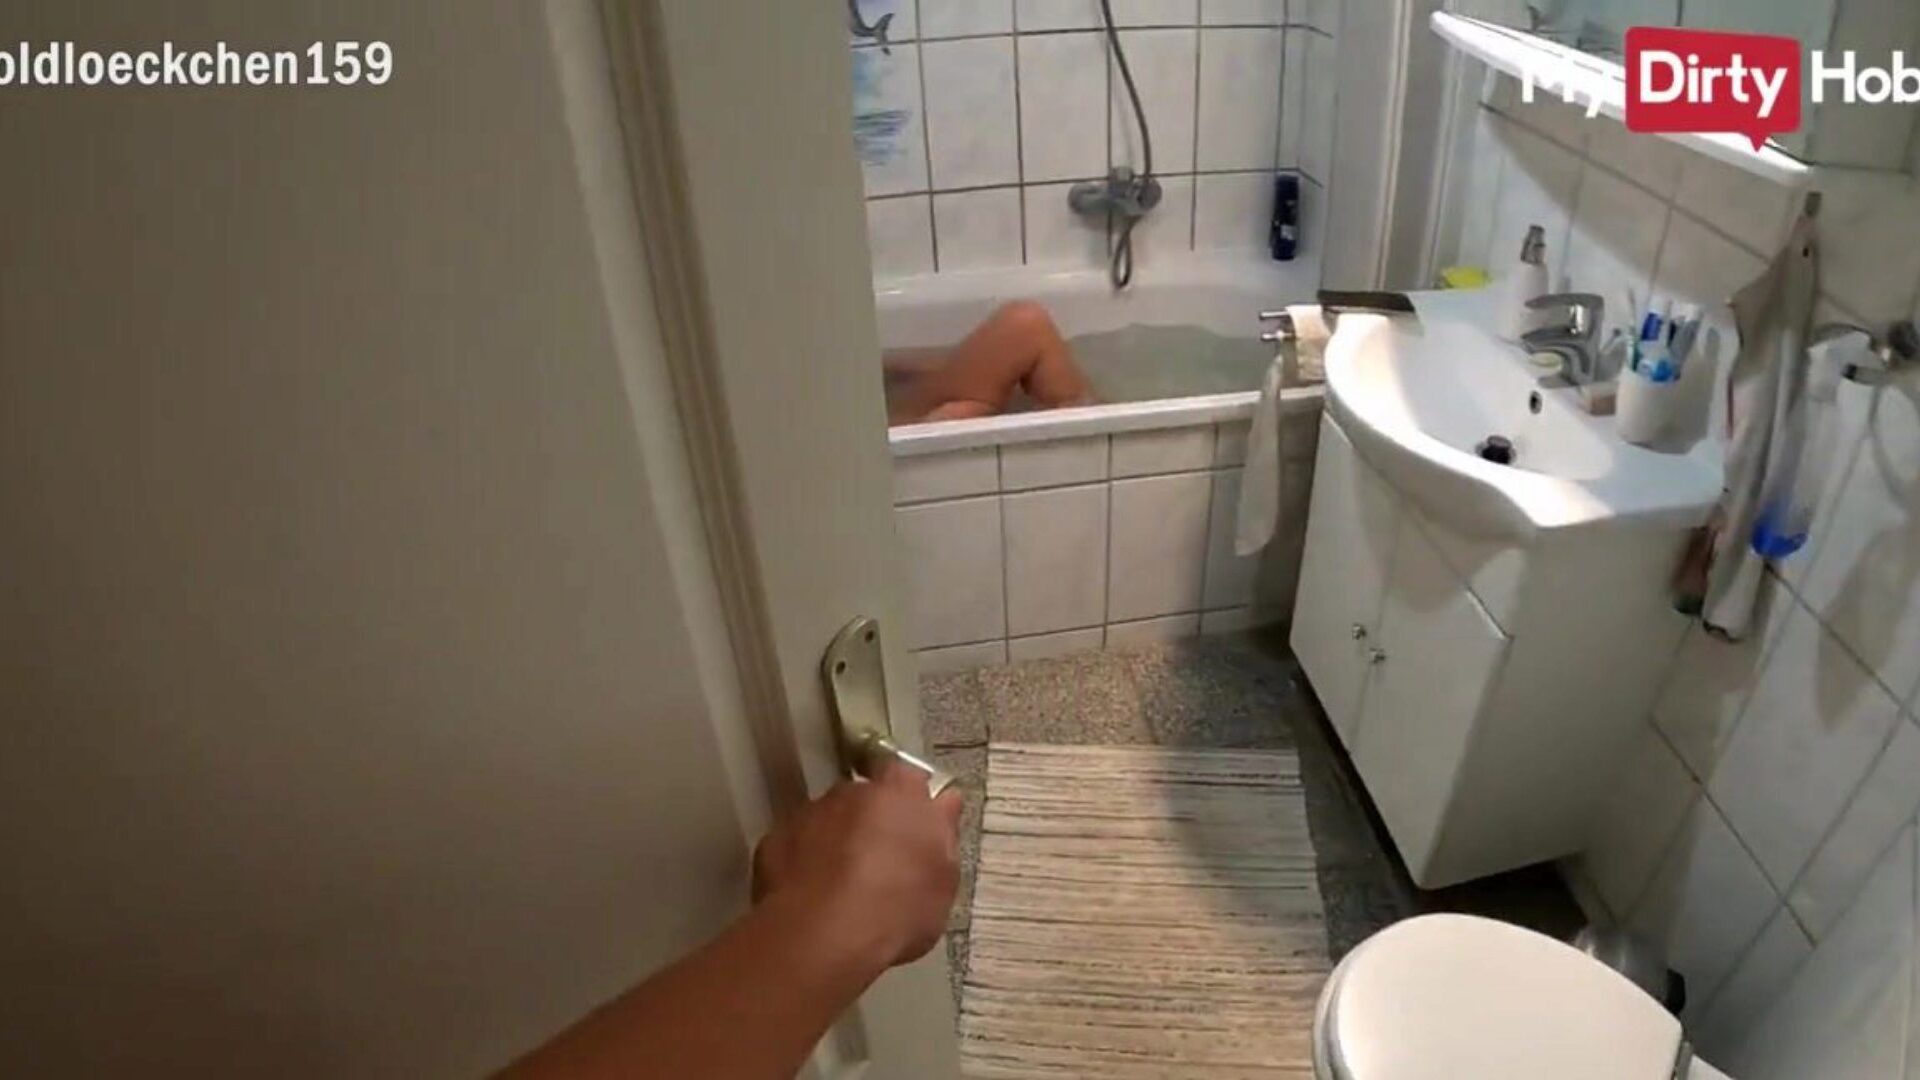 Mydirtyhobby - кудрявая малышка глотает большую порцию спермы в ванне, видео от первого лица